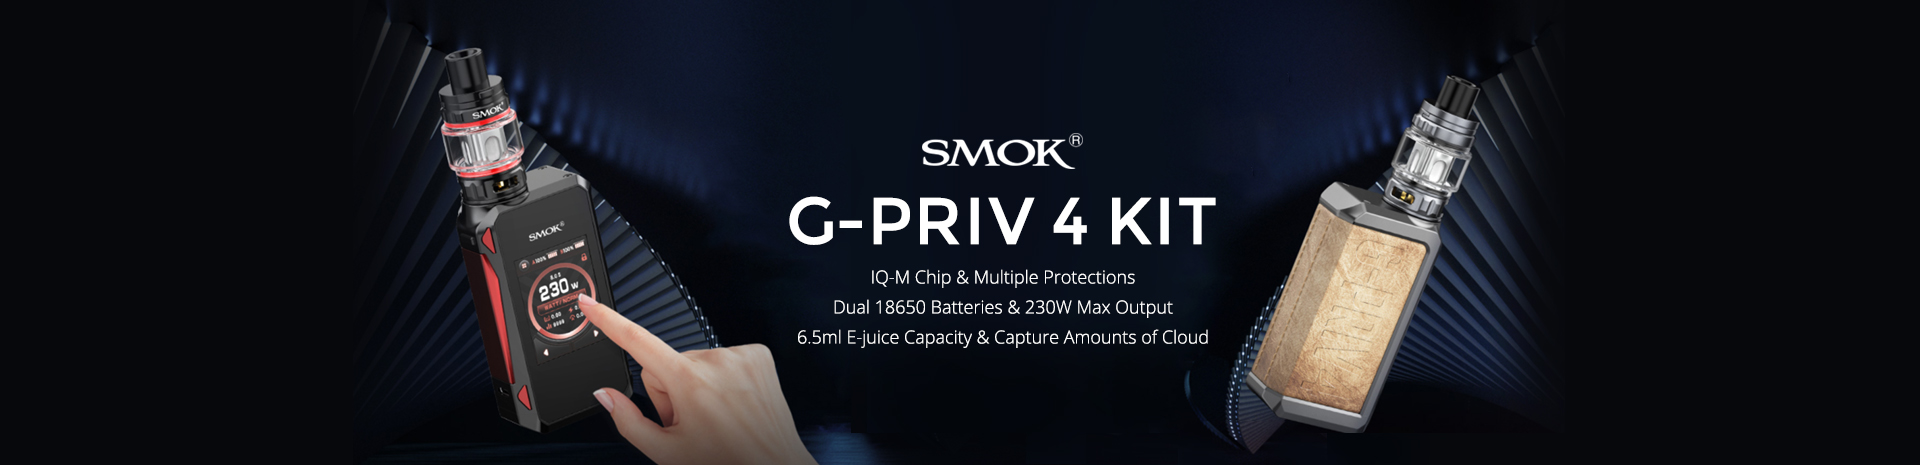 SMOK G PRIV 4 Kit Banner